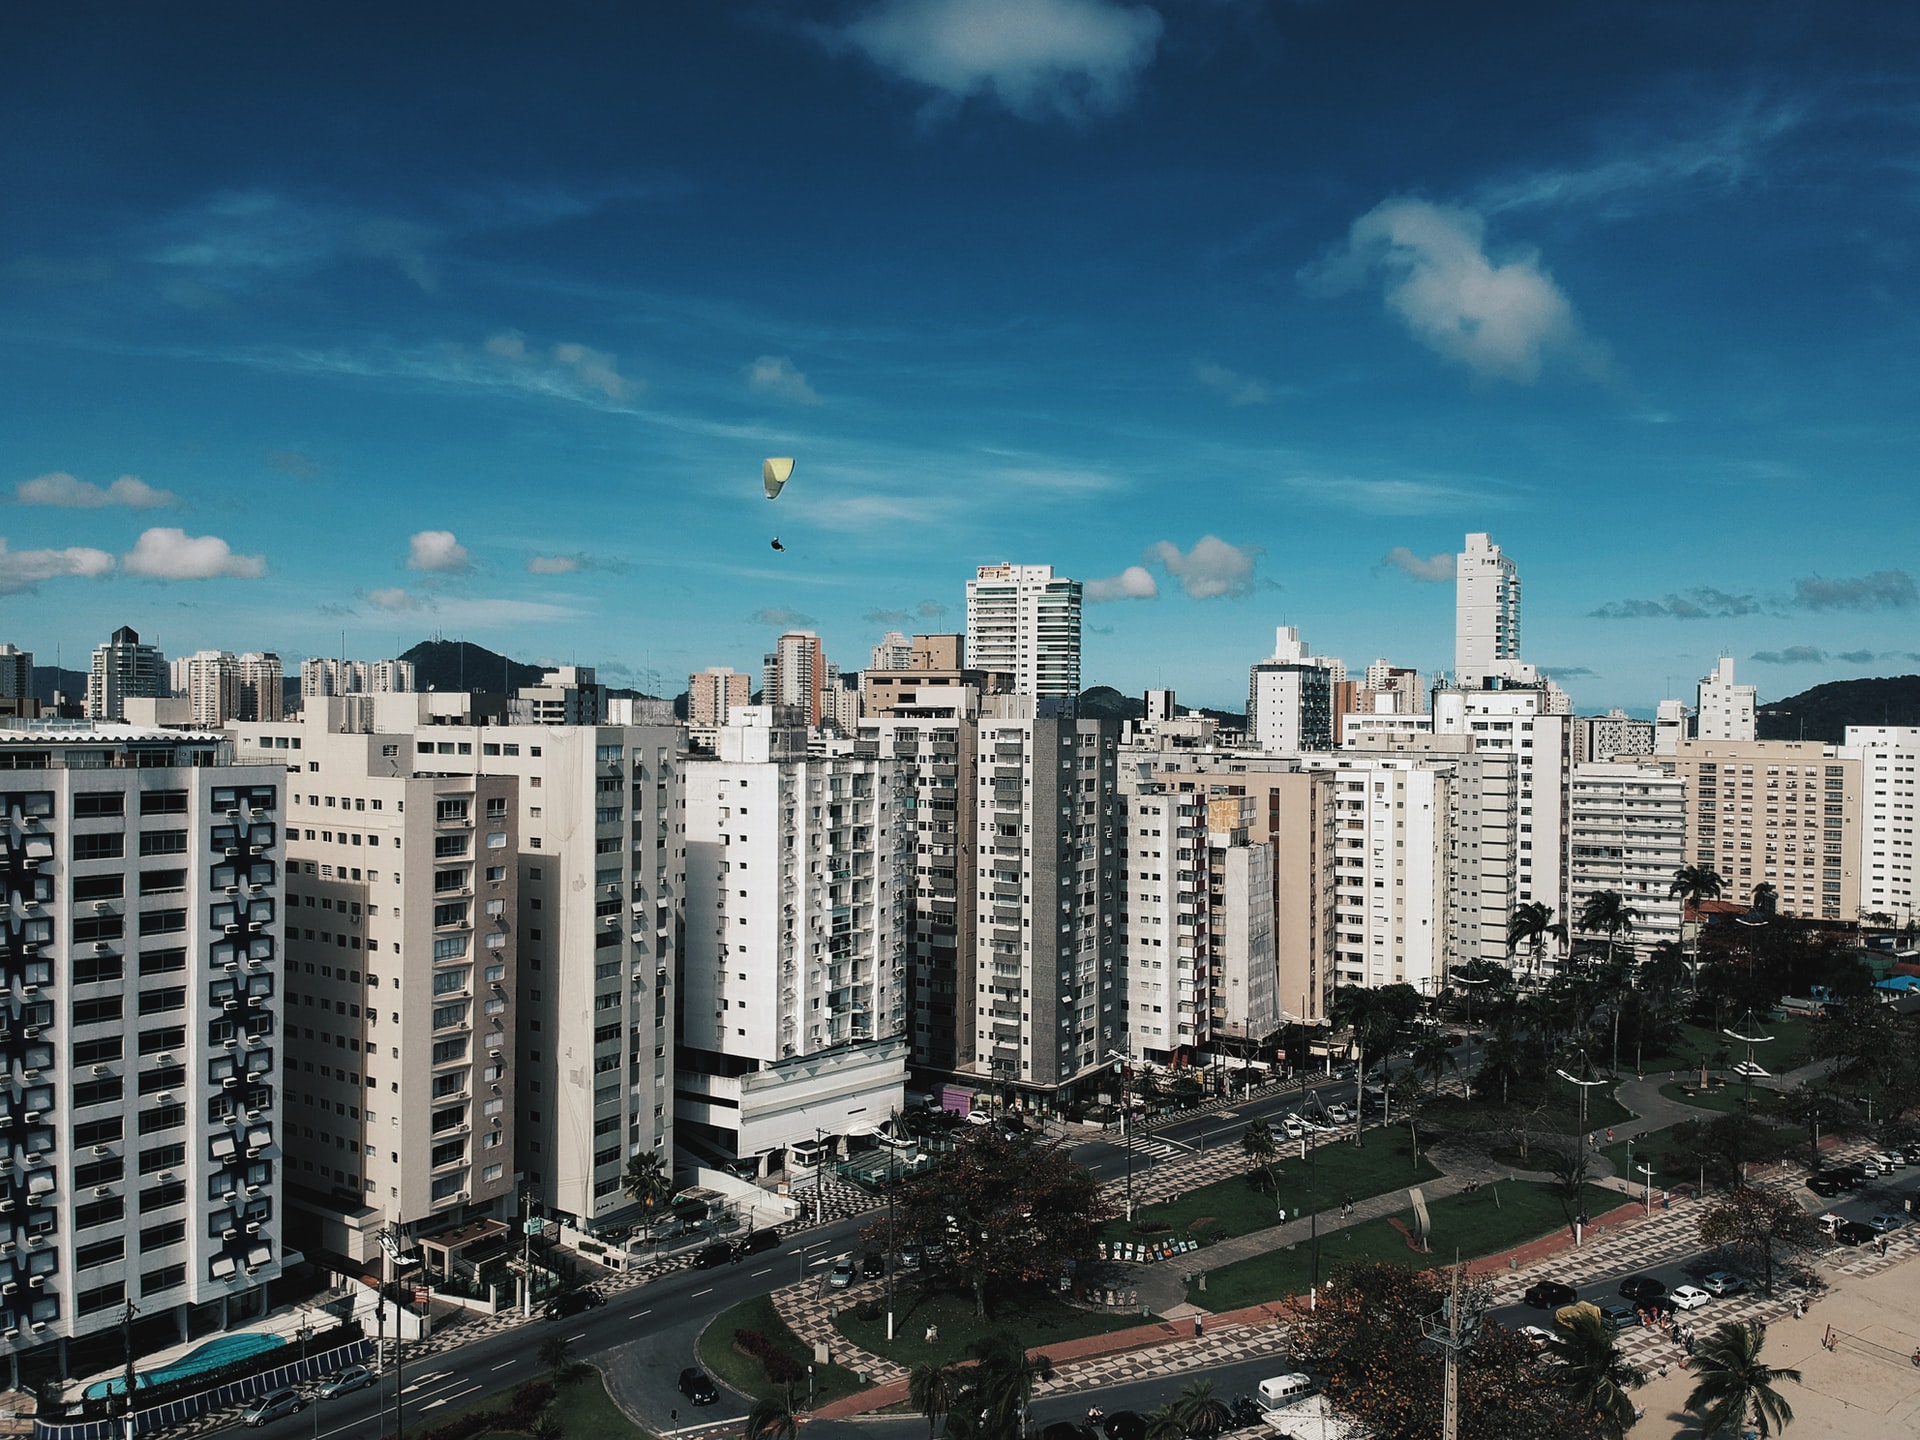 Apartamento em Santos: imagem aérea dos prédios e de um parque na Avenida Bartolomeu de Gusmão na orla do bairro Aparecida